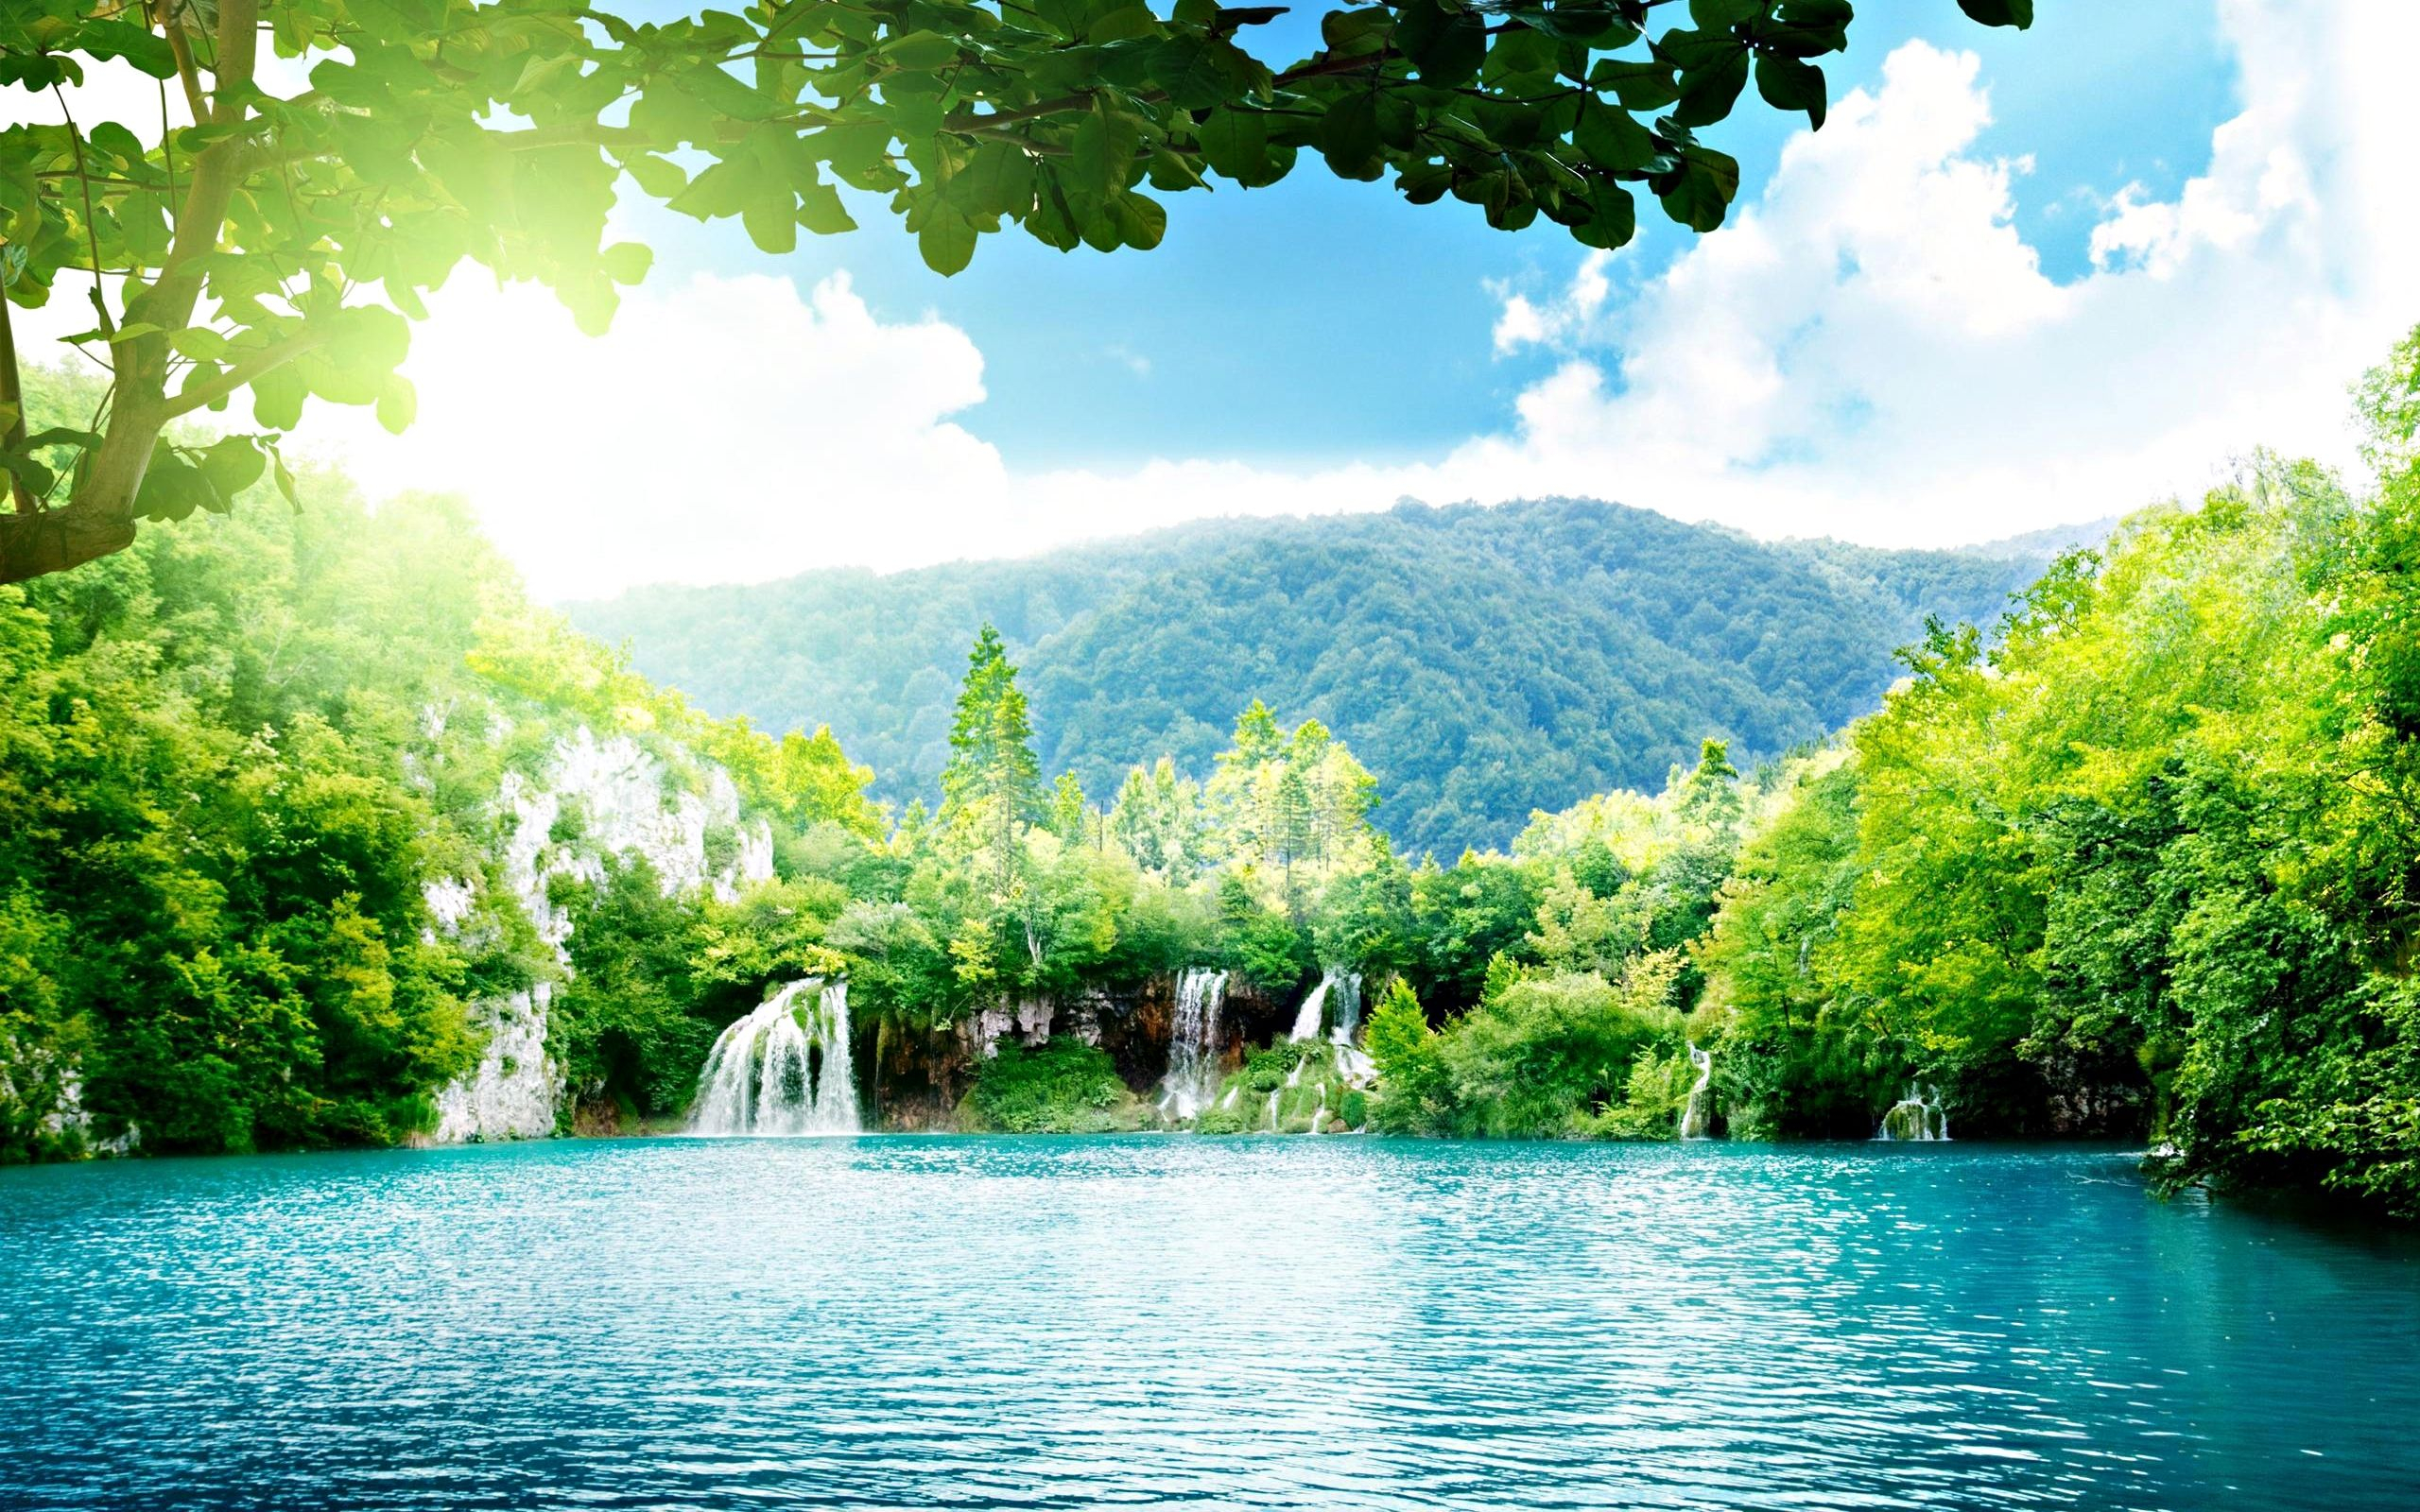 2560x1600 Most Beautiful Scenic Desktop Wallpapers Top Free Most Beautiful Scenic Desktop Backgrounds